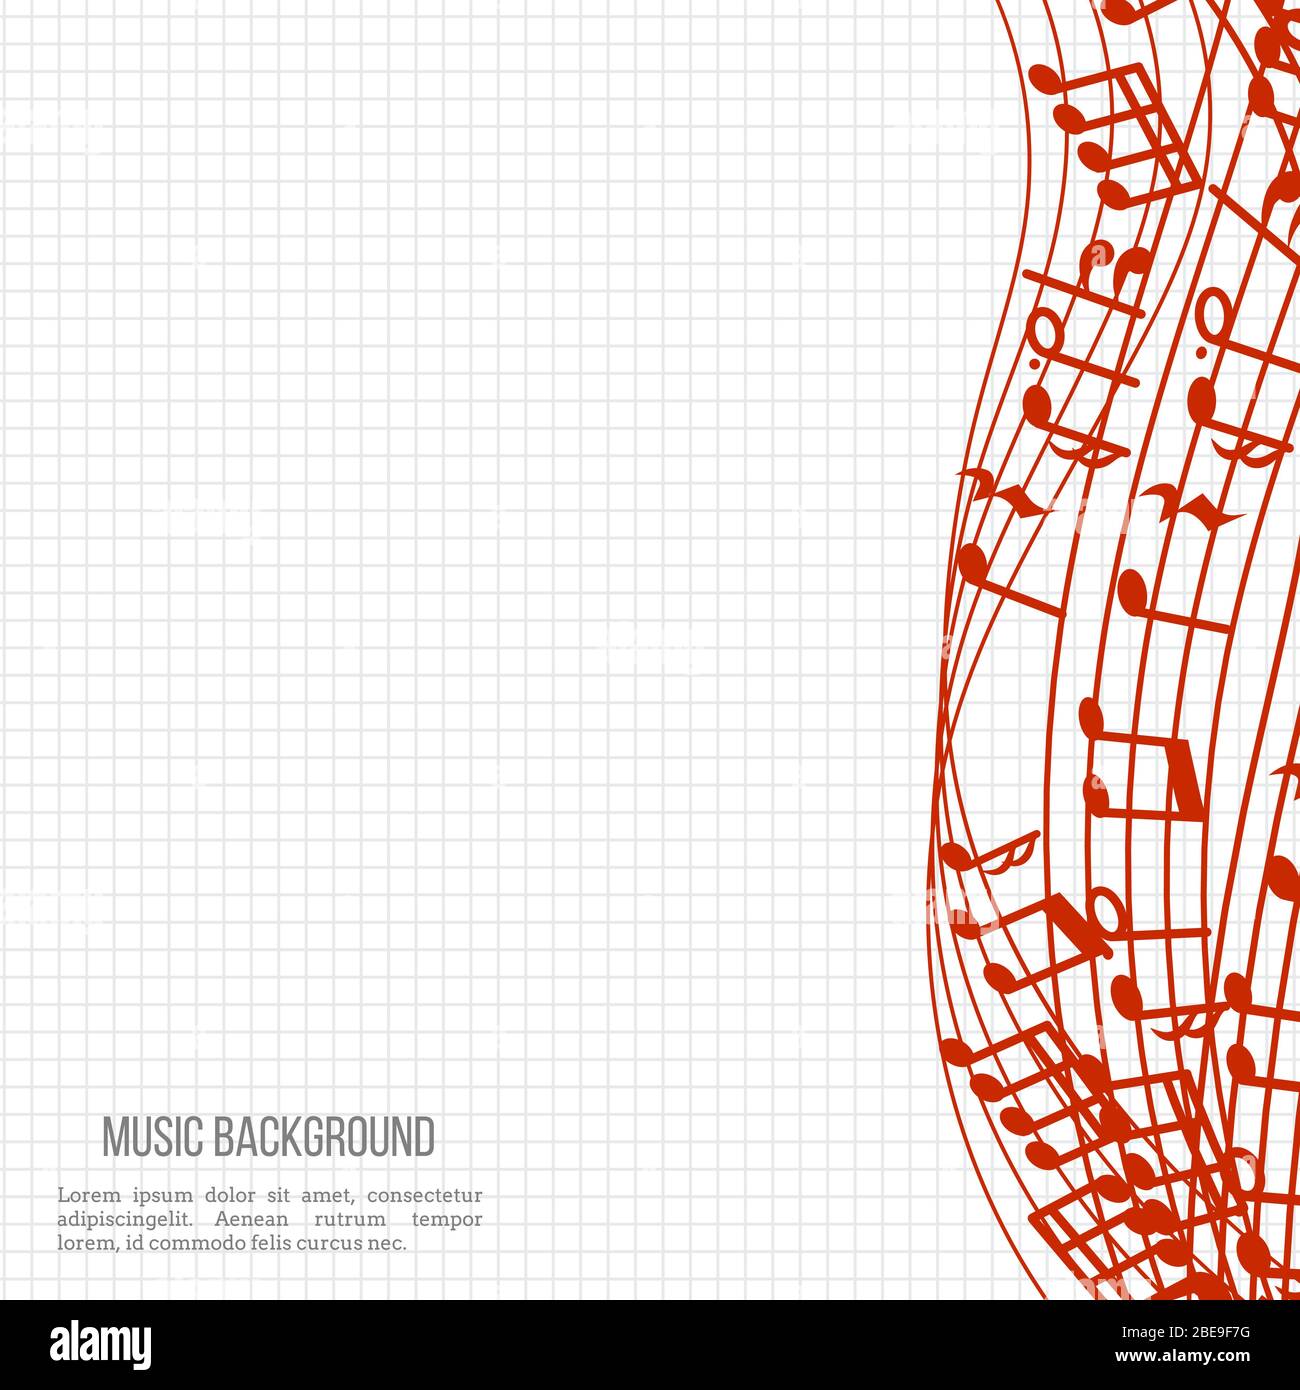 Musica di sottofondo per notebook con note e onde rosse. Illustrazione vettoriale Illustrazione Vettoriale